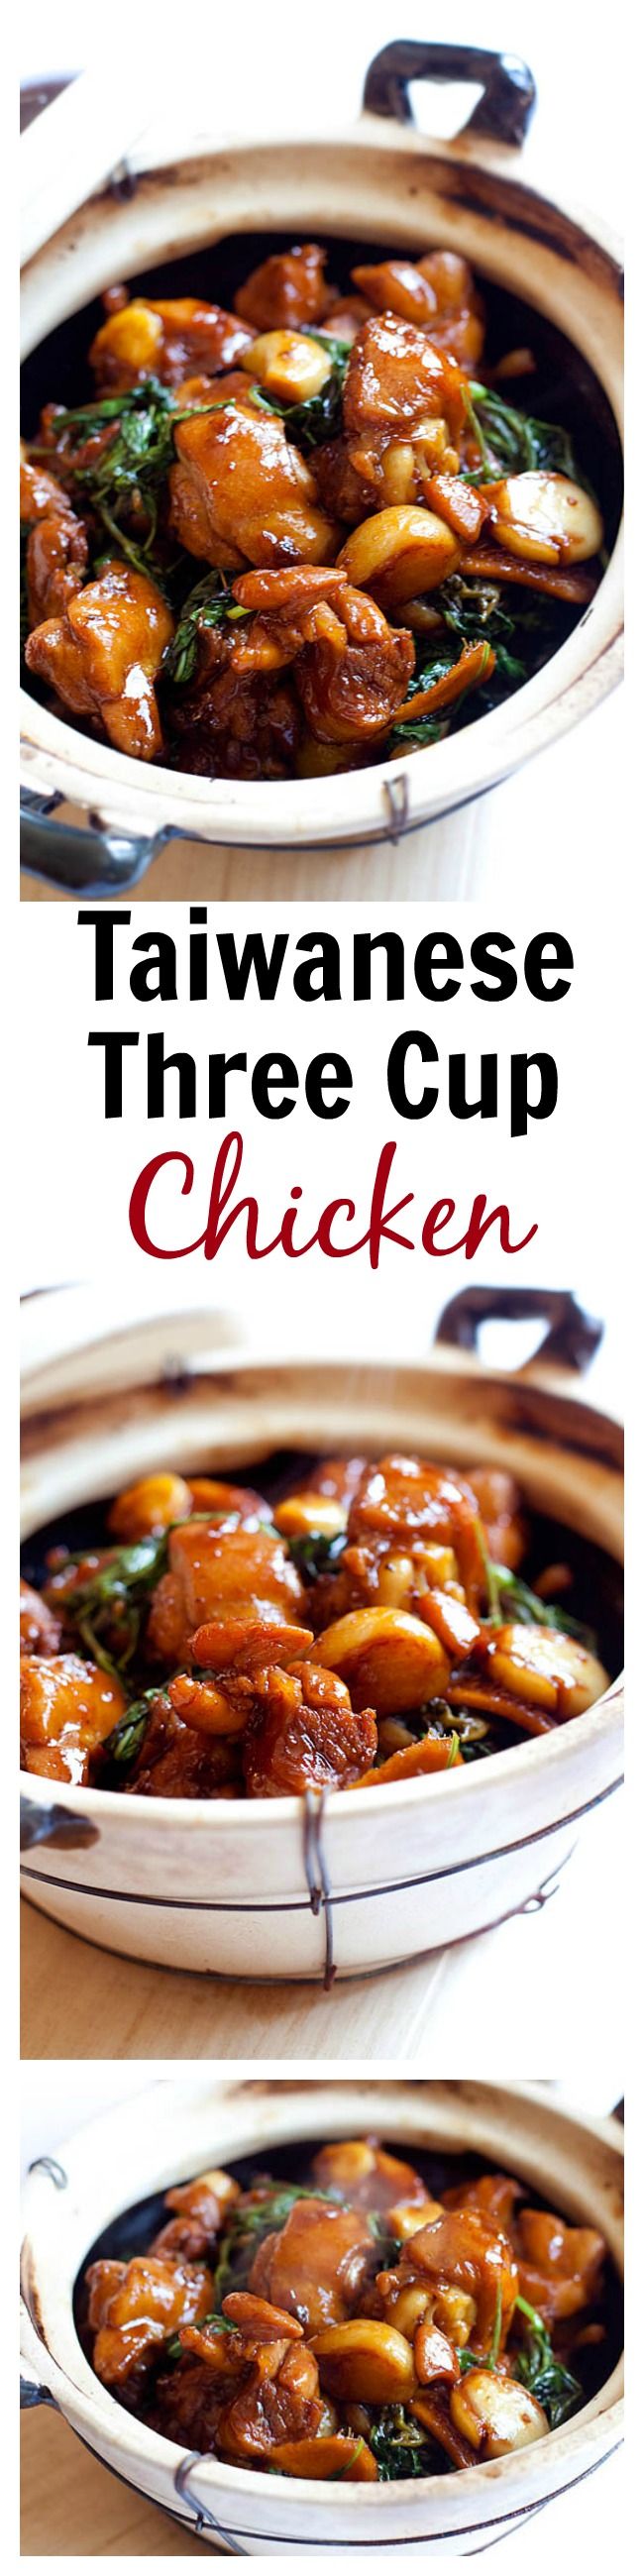 Three Cup Chicken | Easy Delicious Recipes